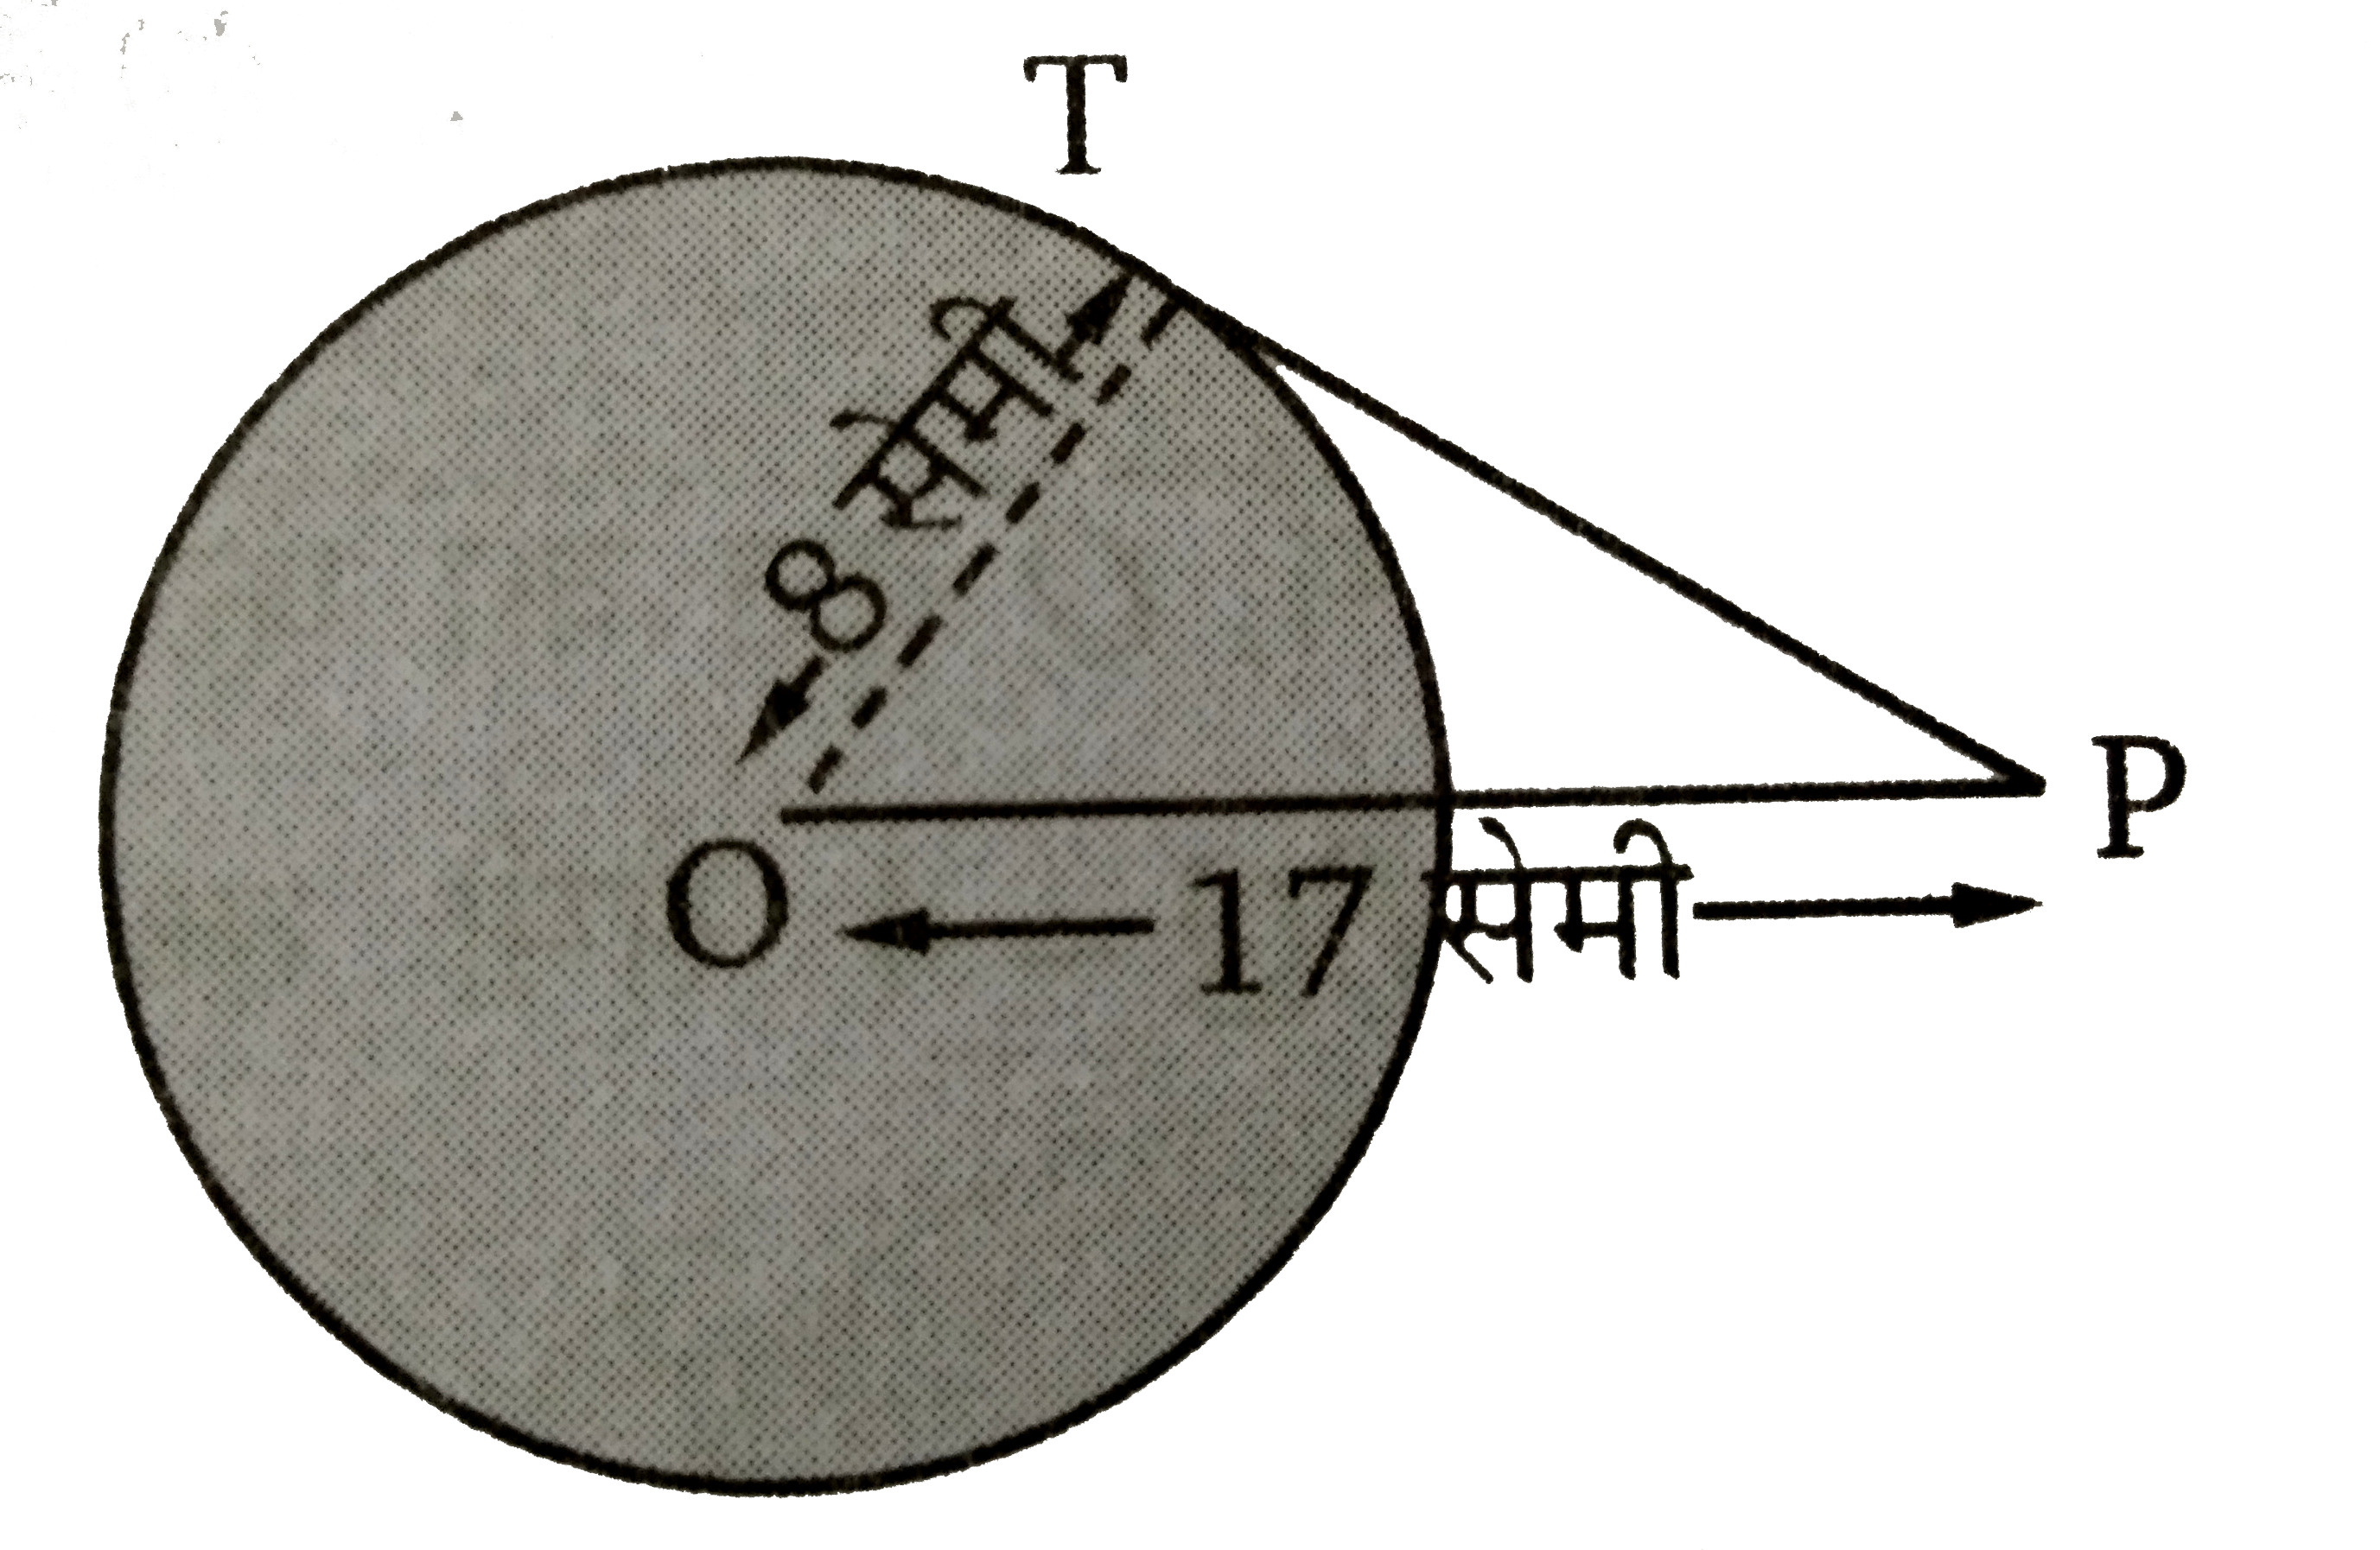 चित्र में PT, O  केन्द्र वाले वृत्त की स्पर्शी है। यदि OP = 17  सेमी तथा OT = 8  सेमी तब स्पर्शी PT  की लम्बाई ज्ञात कीजिए ।